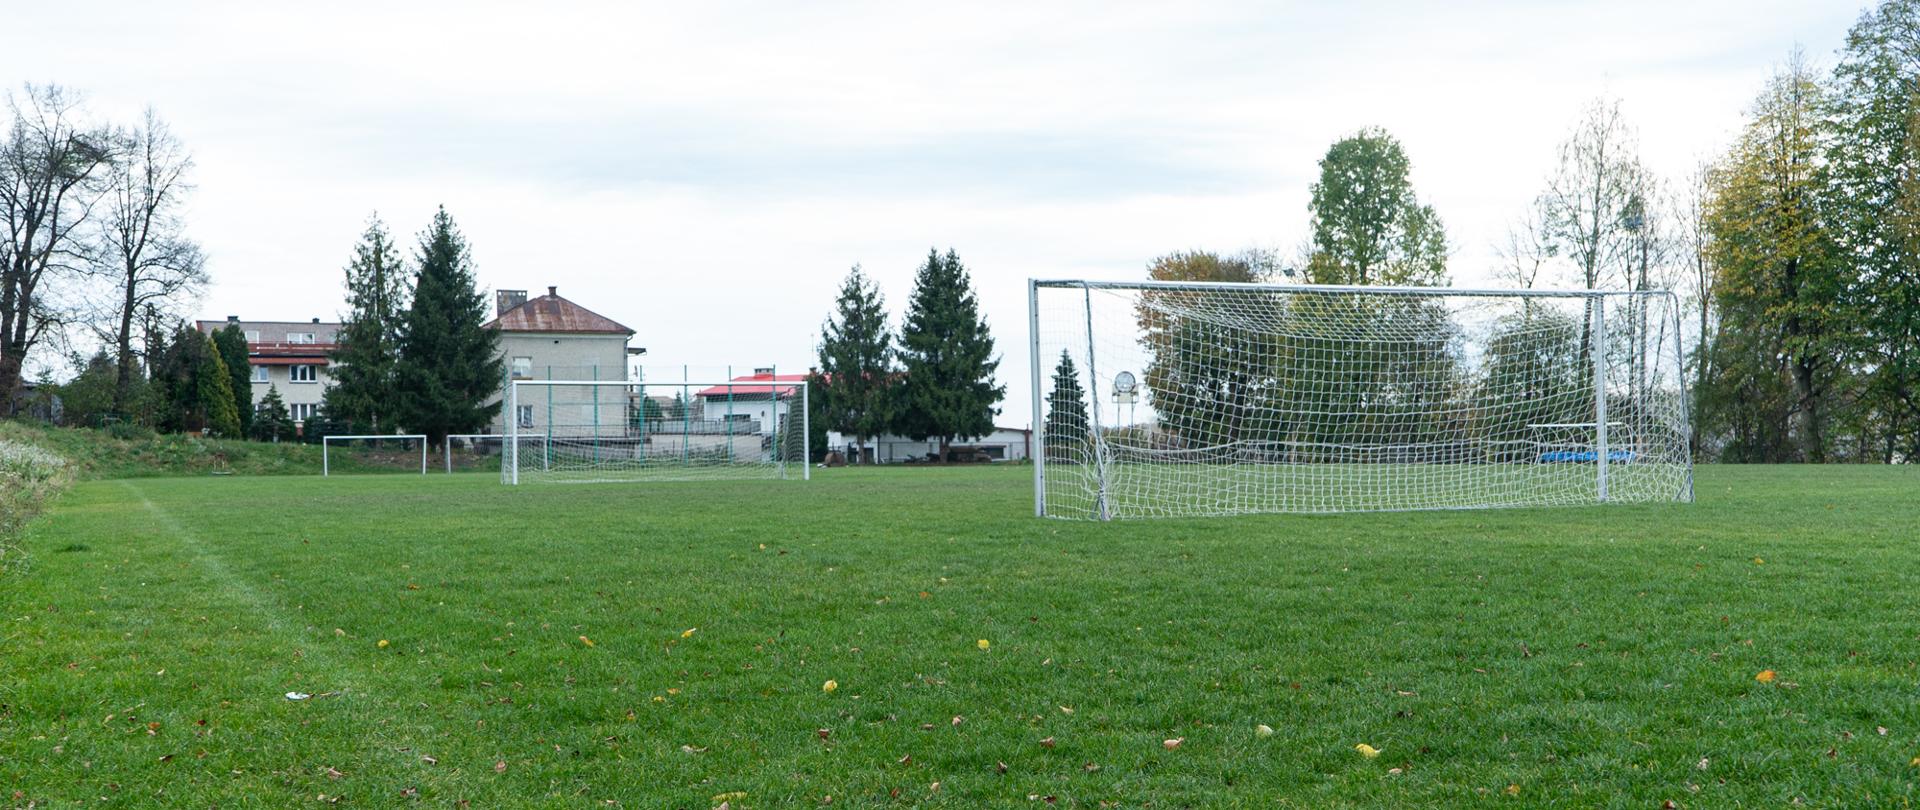 Na zielonej murawie boiska w centrum zdjęcia stoją dwie bramki służące do gry w piłkę nożną w tle znajduję się strefa kibica,dwie bramki,drzewa oraz budynki